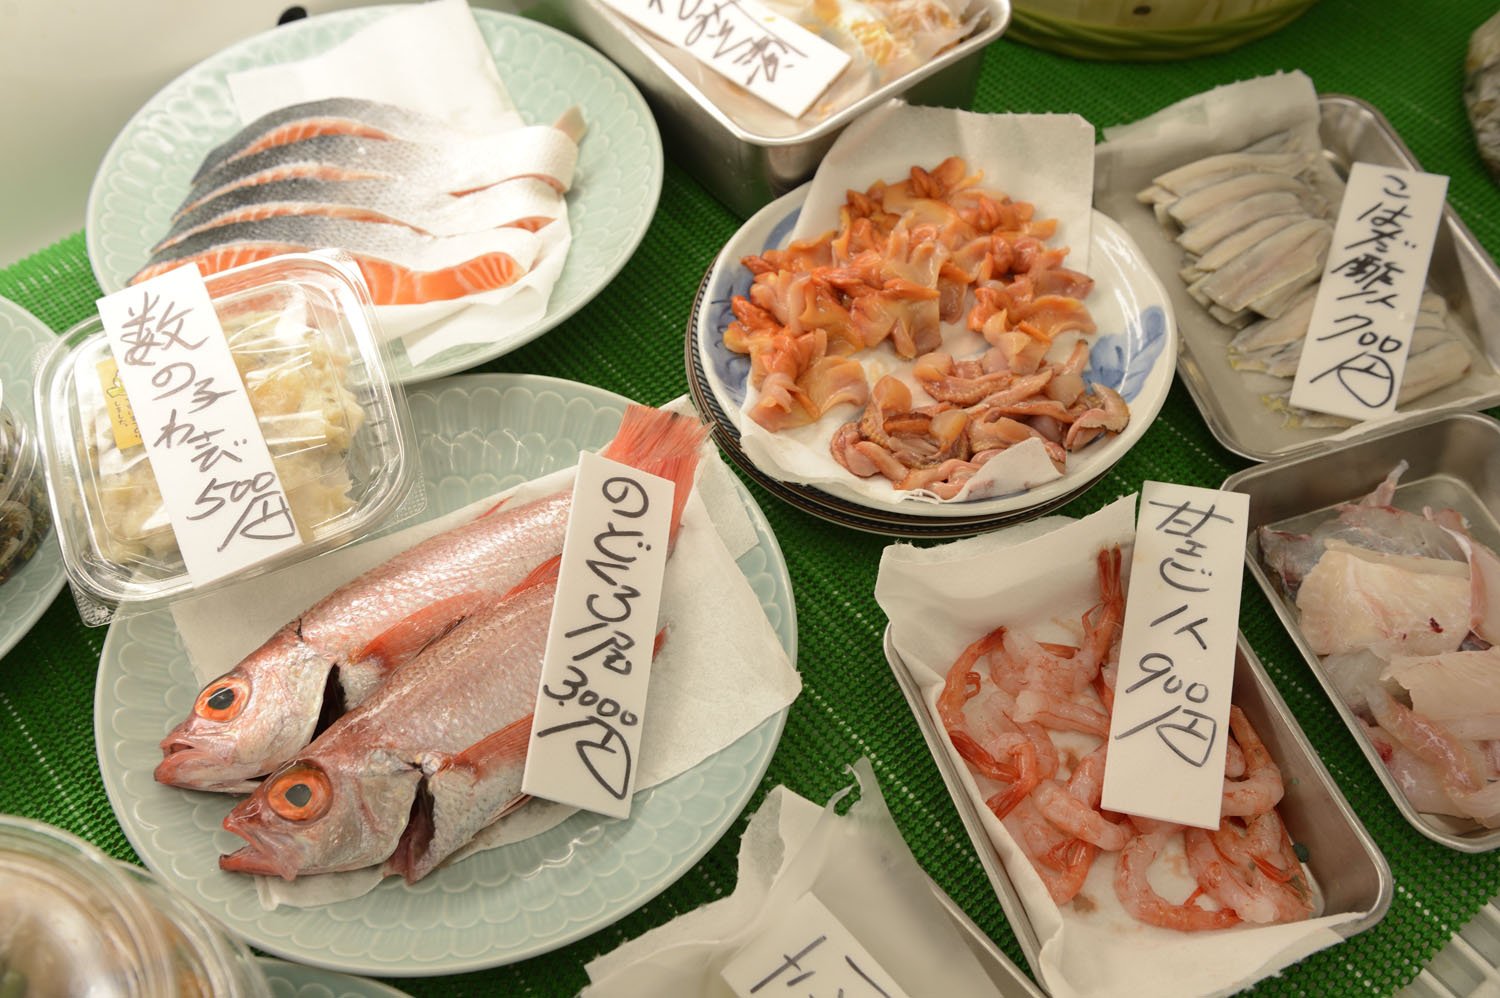 鮮魚の他、自家製のこはだの酢じめなども並ぶ。